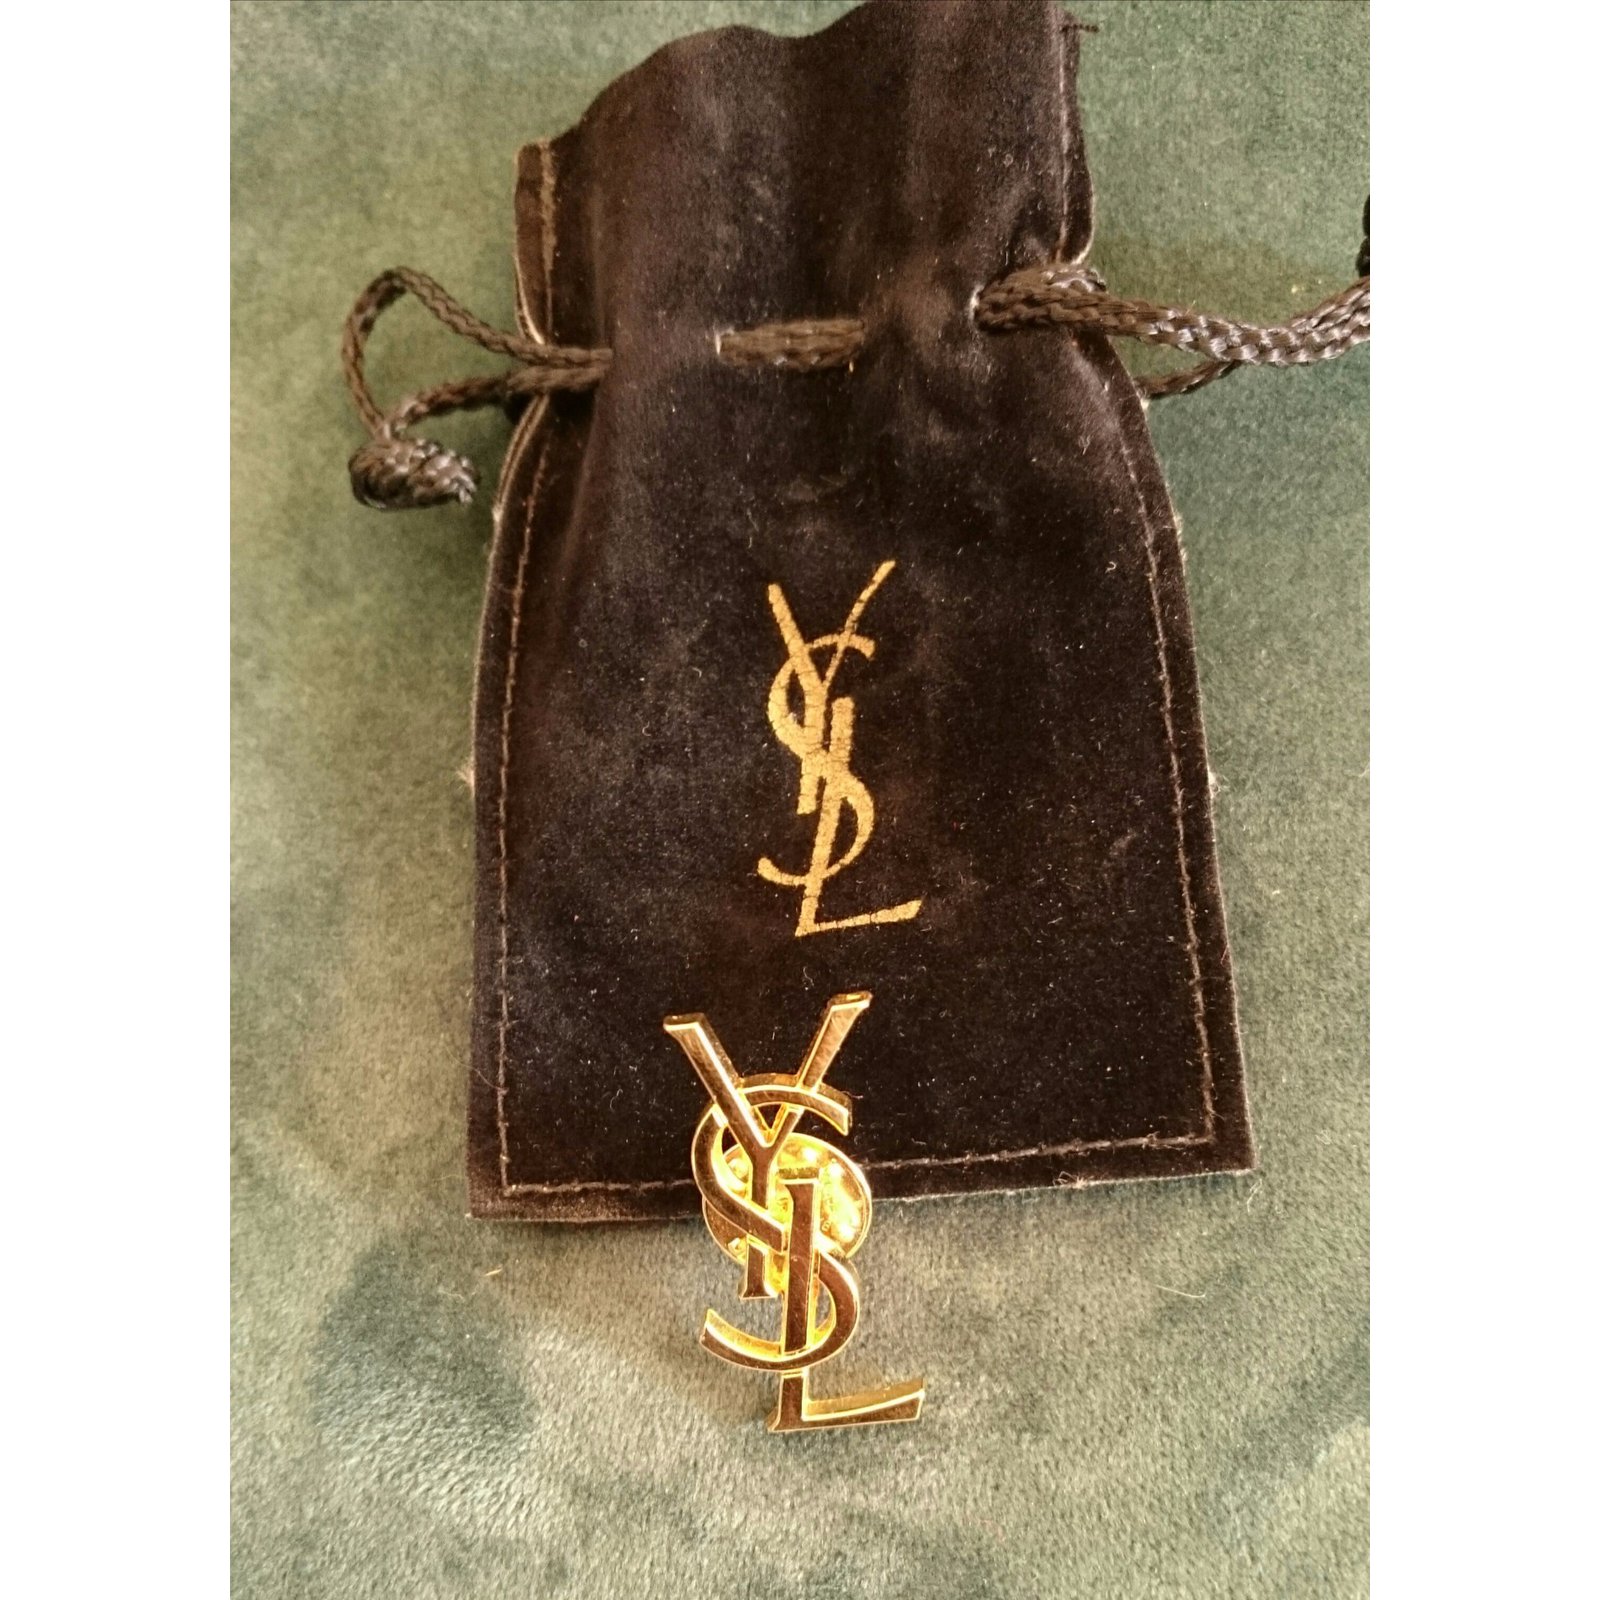 Pin on Yves Saint Laurent bag